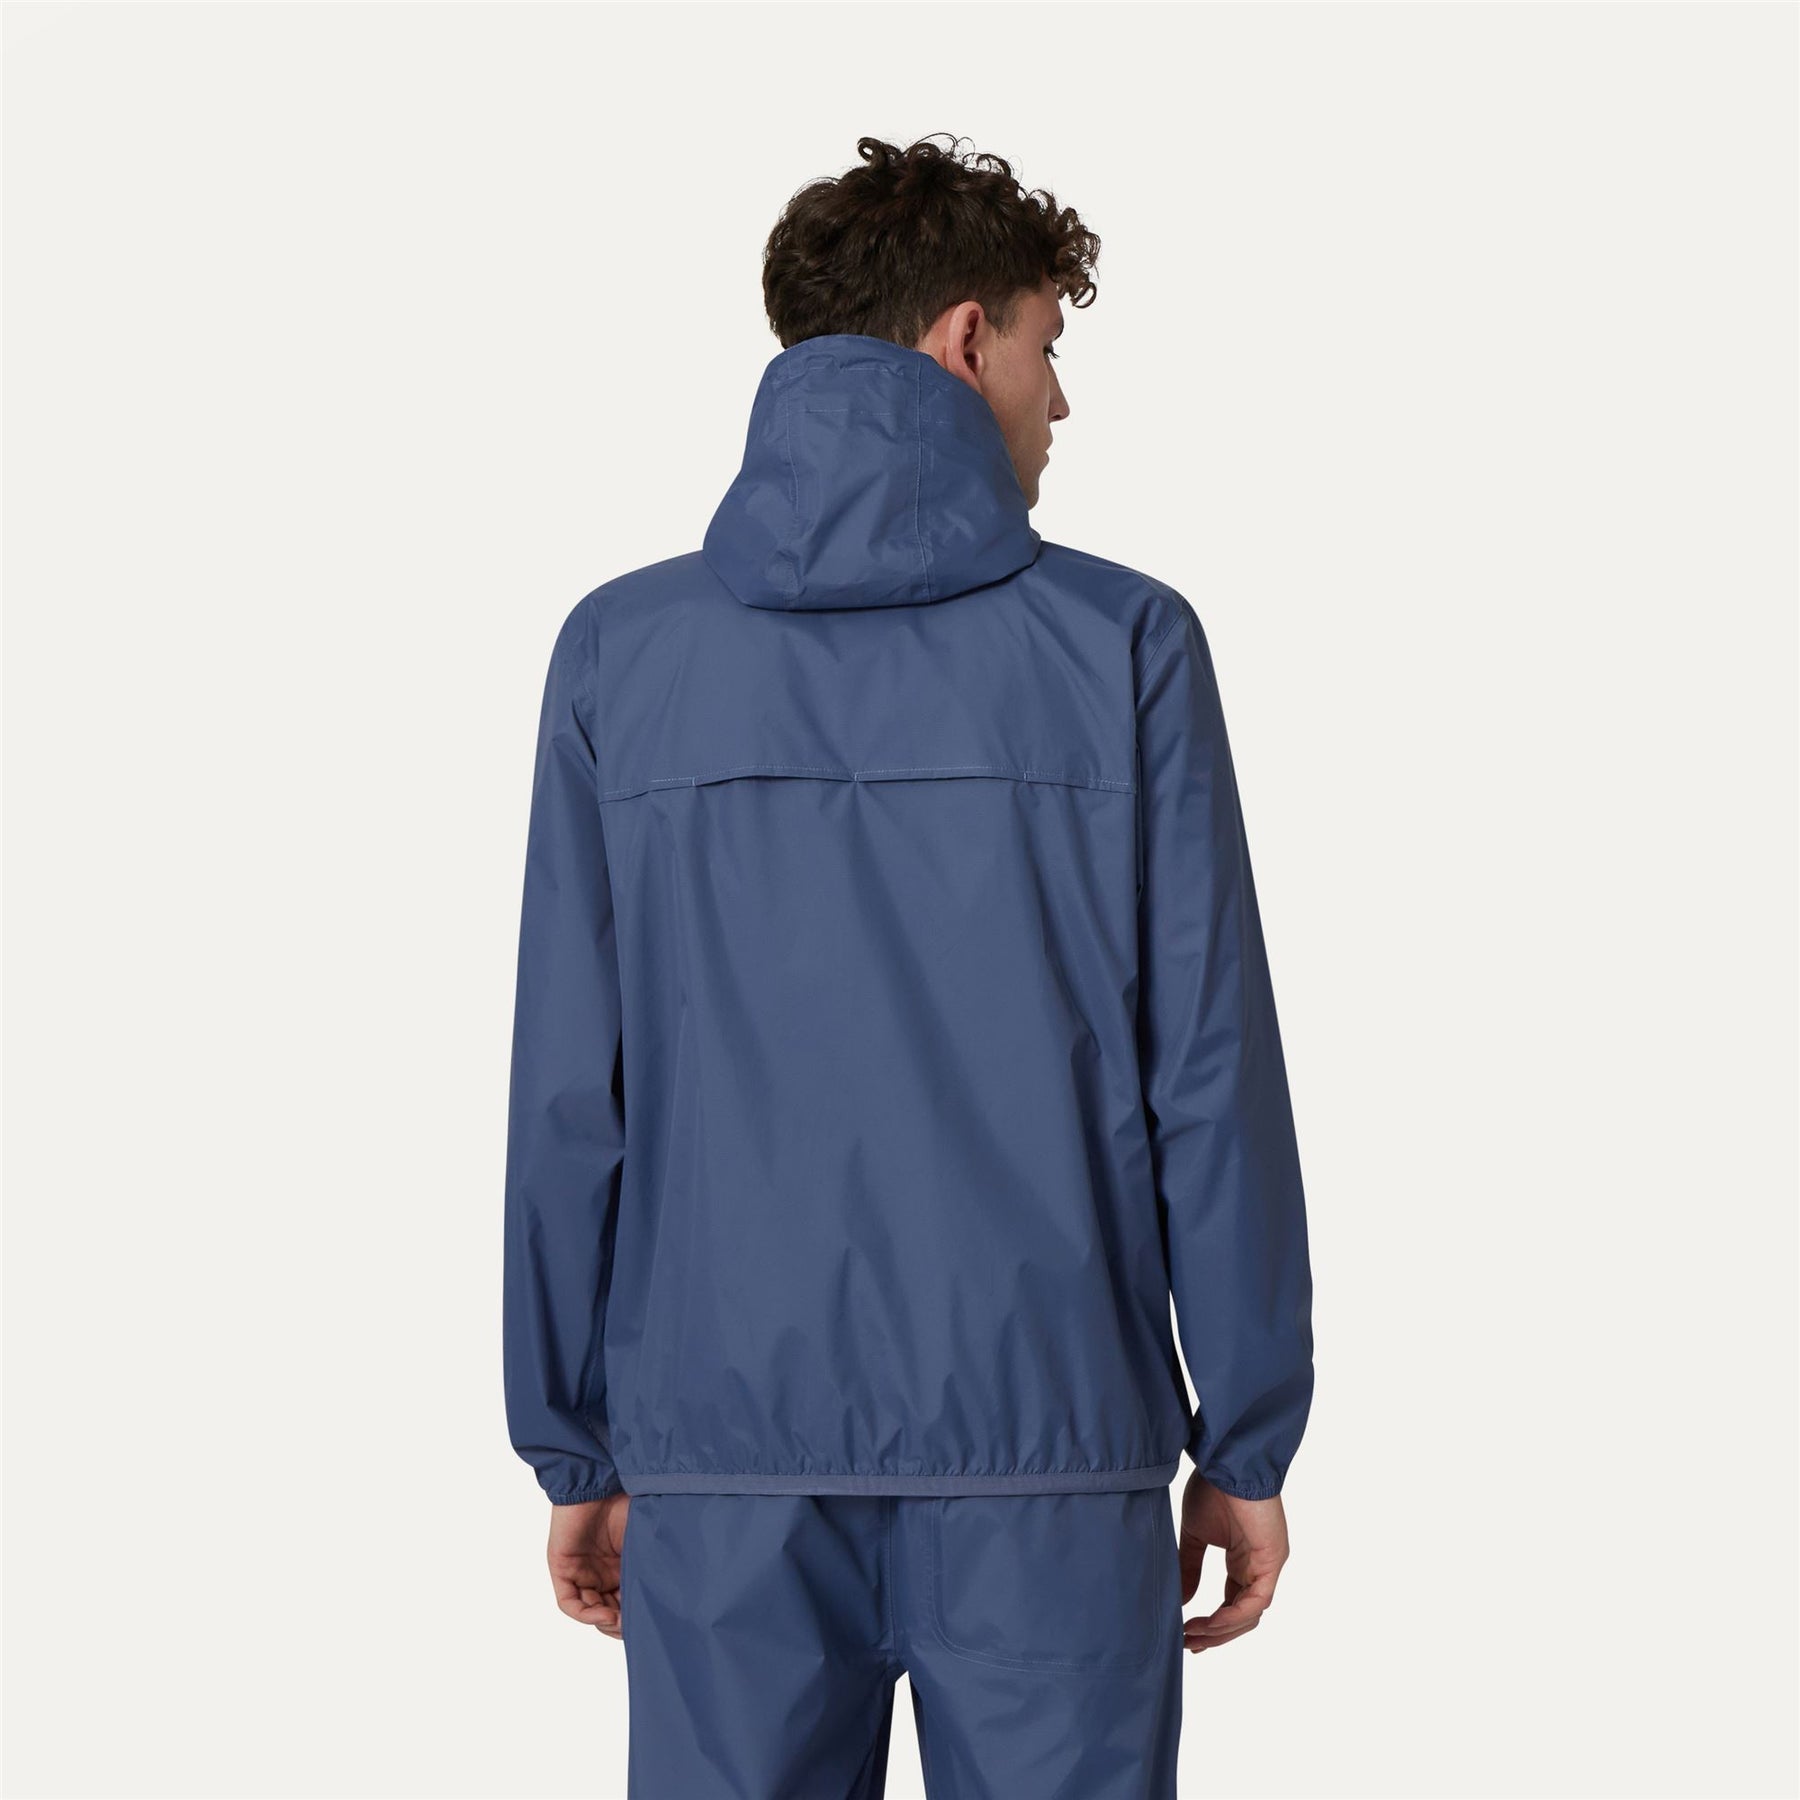 Claude - Unisex Packable Full Zip Waterproof  Rain Jacket in Blue Indigo